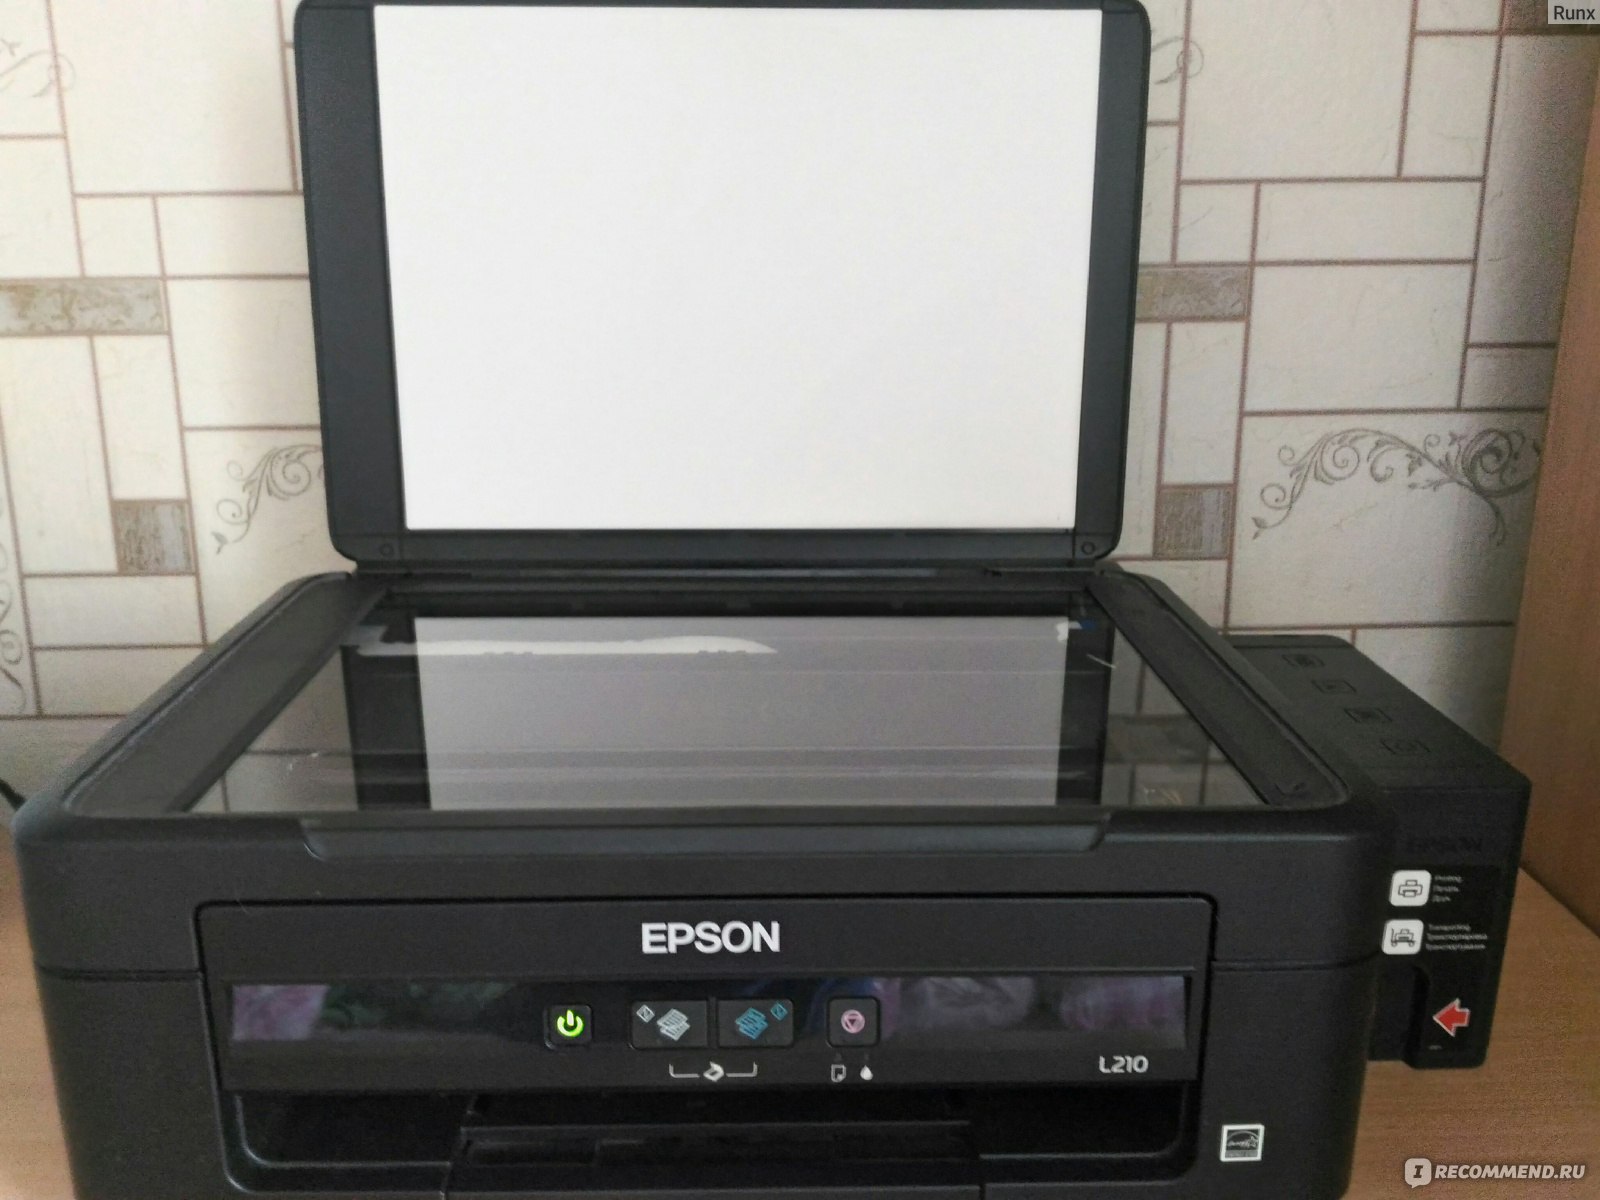 Принтер Еpson печатает пустые листы